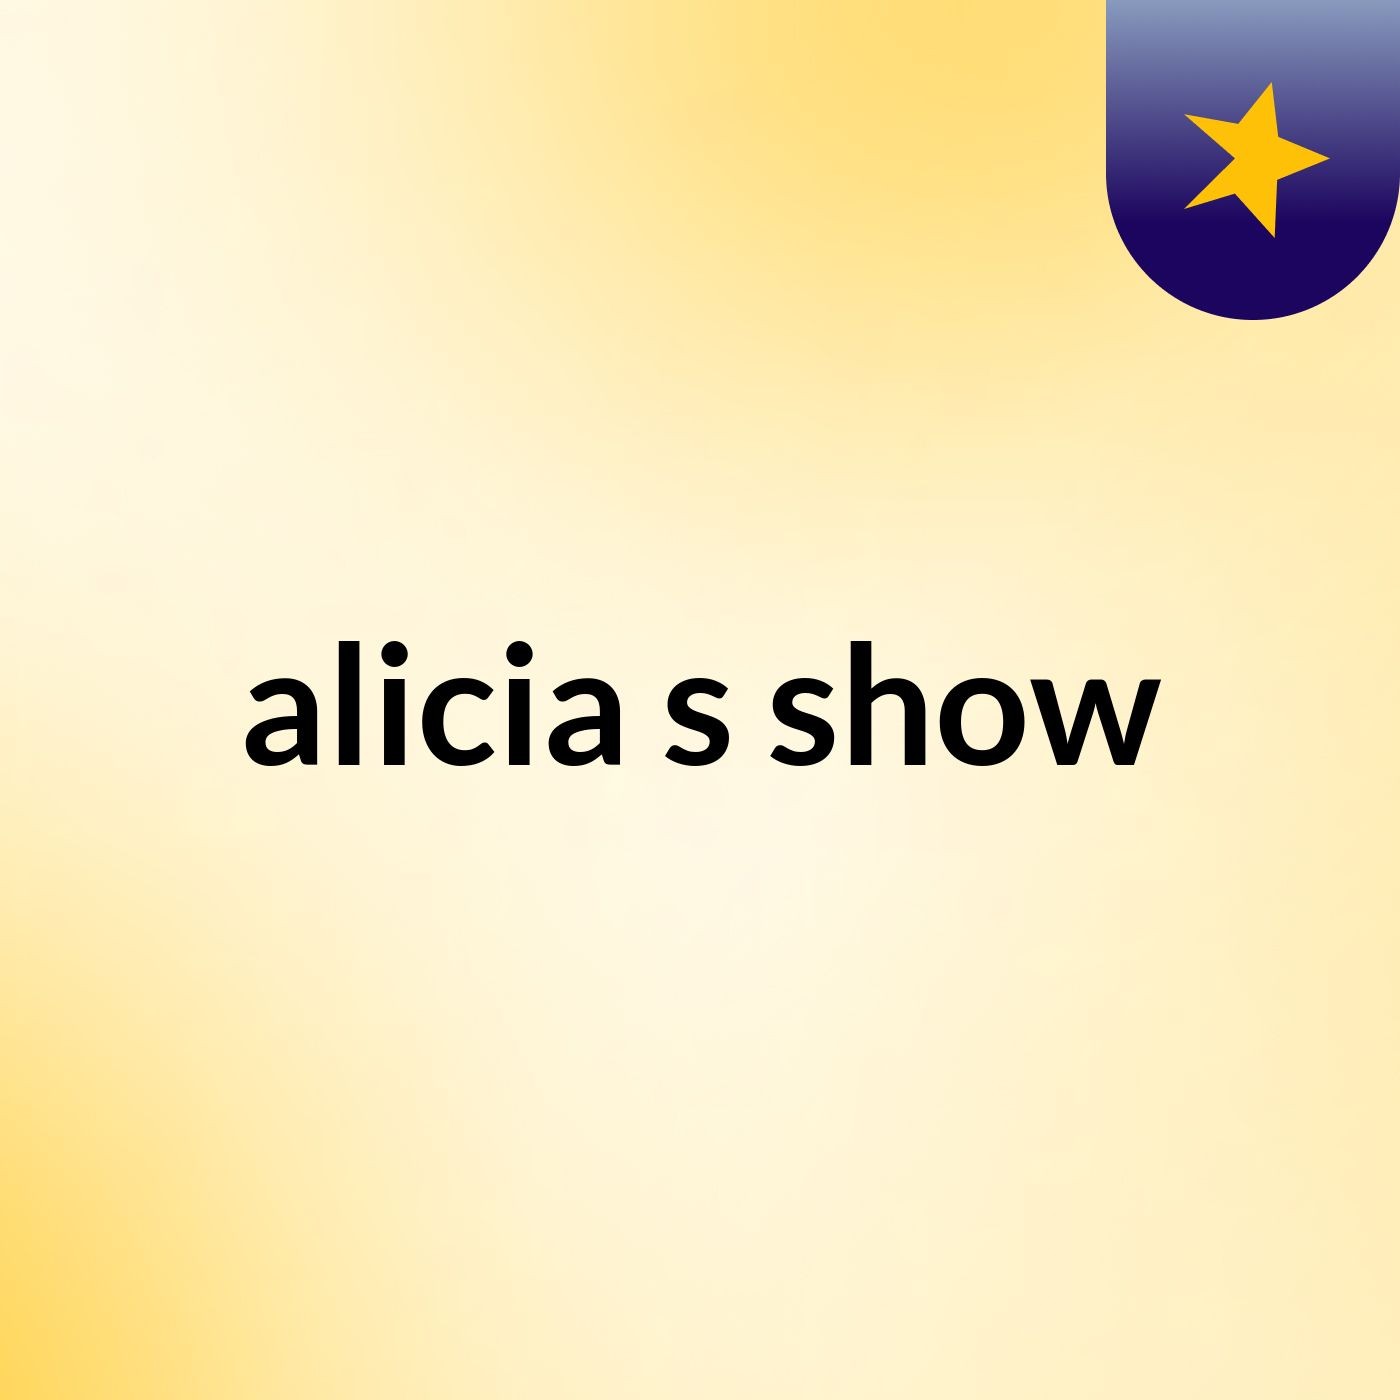 alicia's show